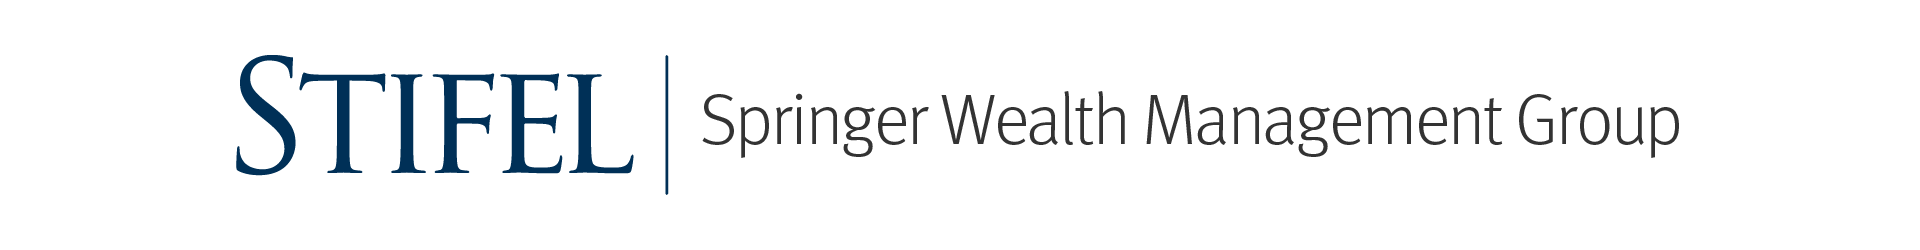 Stifel | Springer Wealth Management Group